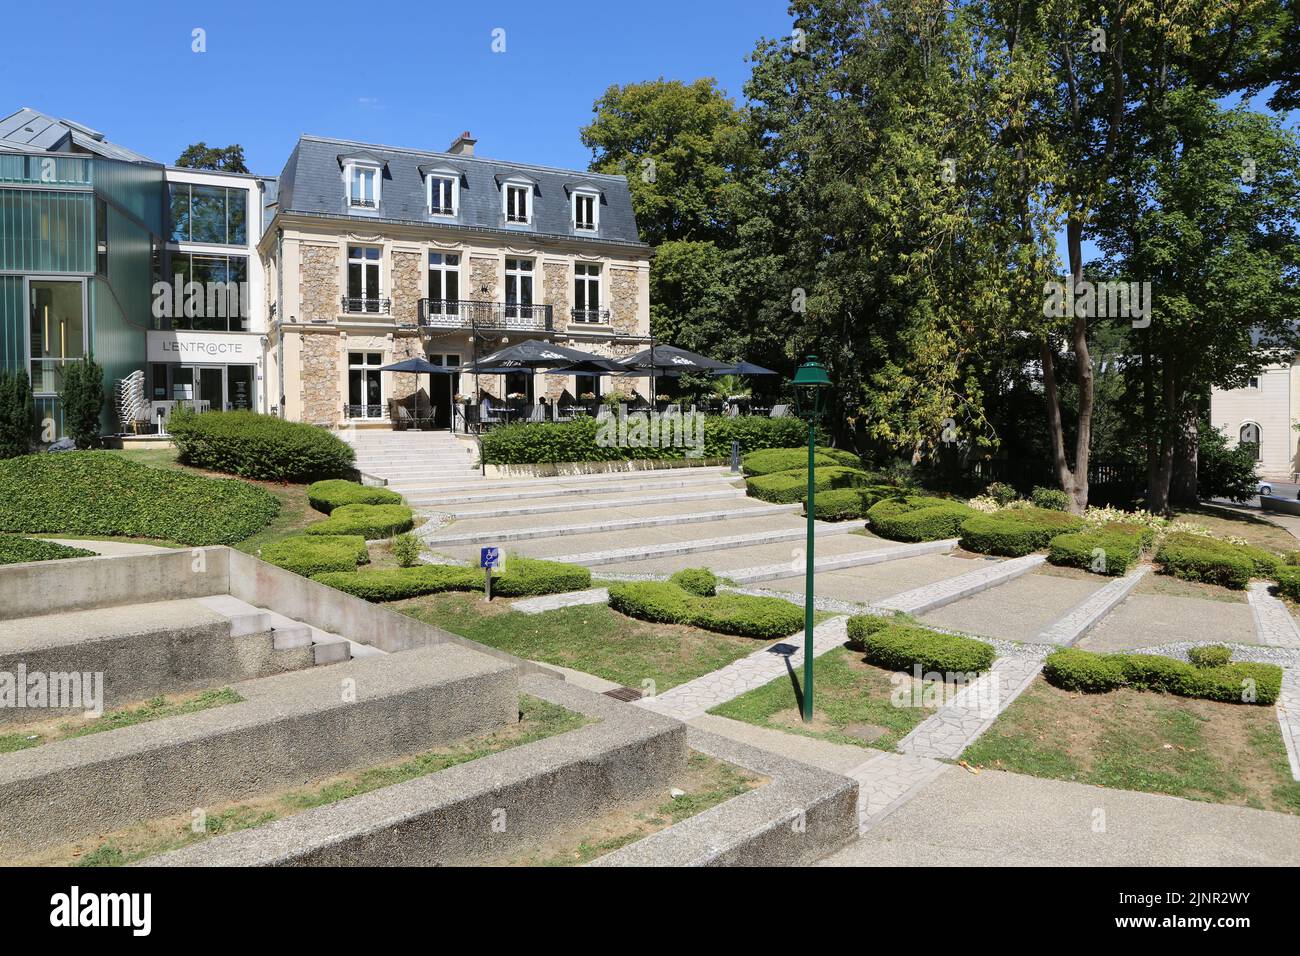 L'Entracte. Restaurant. Espace culturel. Ville d'Avray. Ile-de-France. France. Europe. Stock Photo